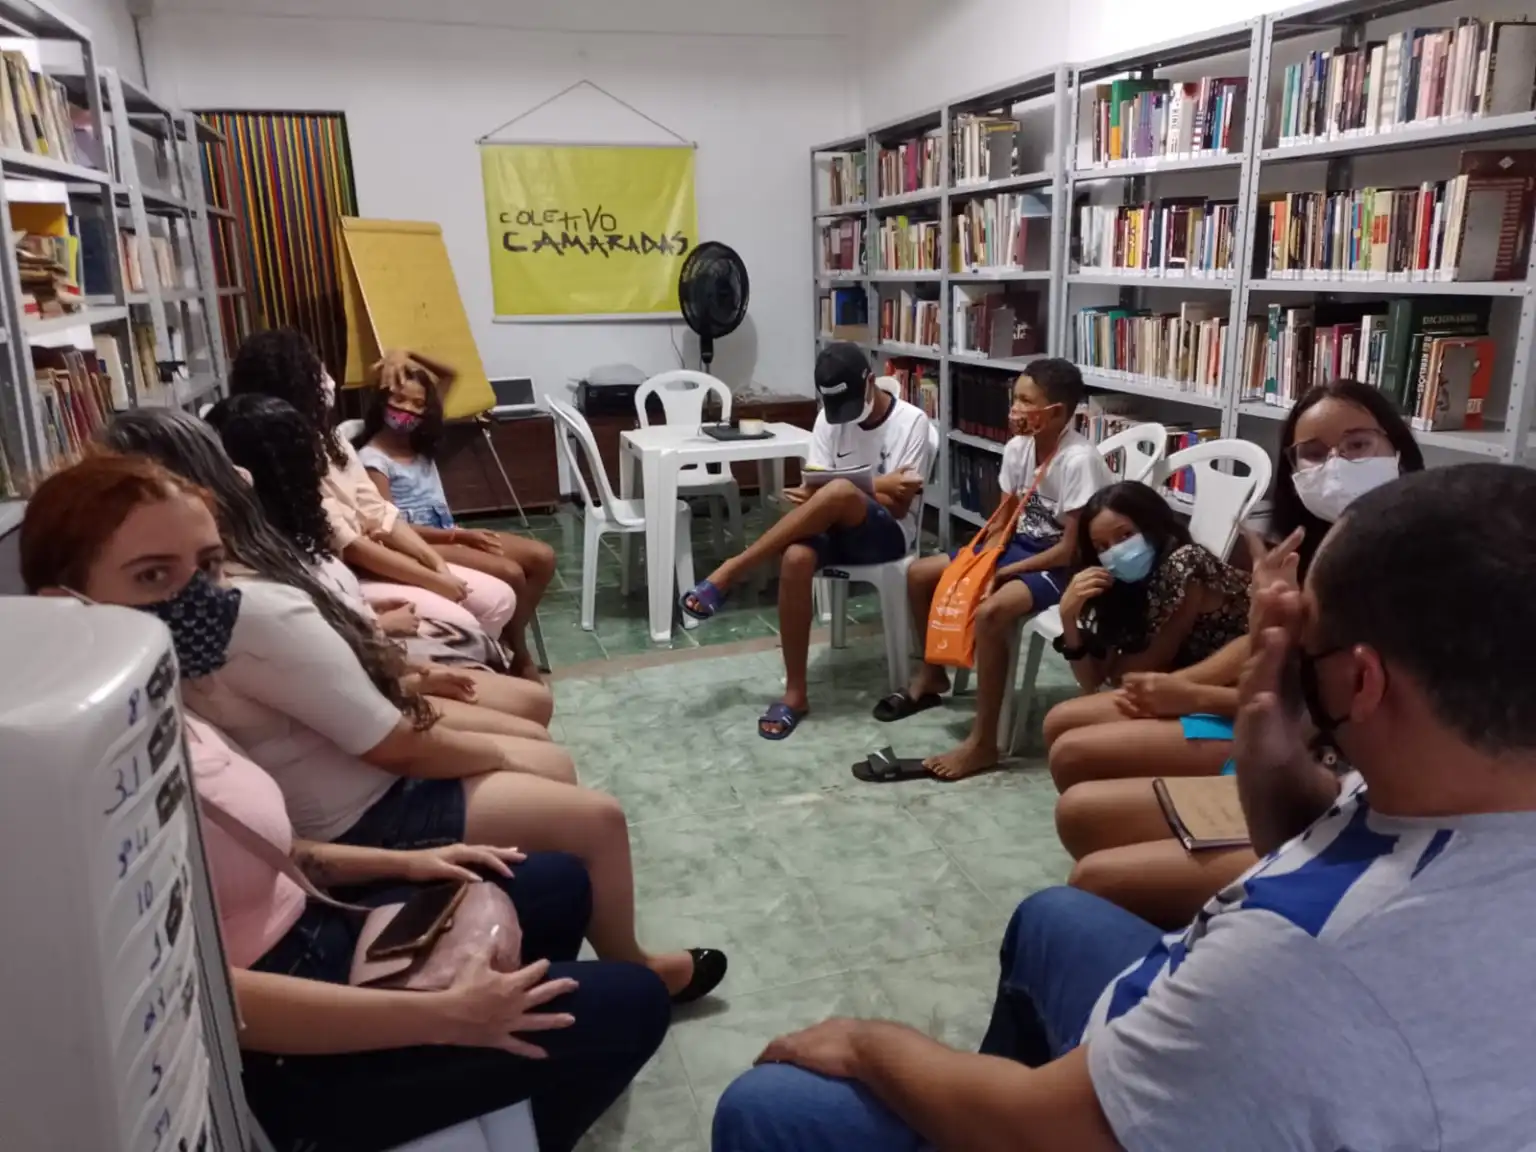 Coletivo Camaradas realiza formação e eleição neste sábado (13) no Ponto de Cultura SCAN